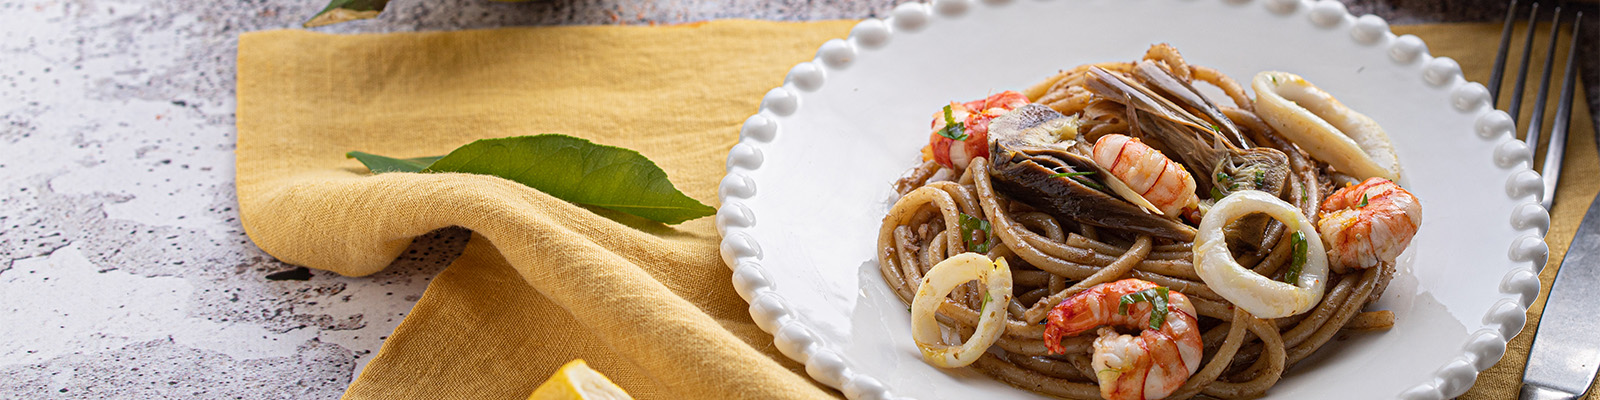 Pasta Garofalo - Spaghettone aus Gragnano xxl Garofalo mit Tintenfischen und Artischocken.